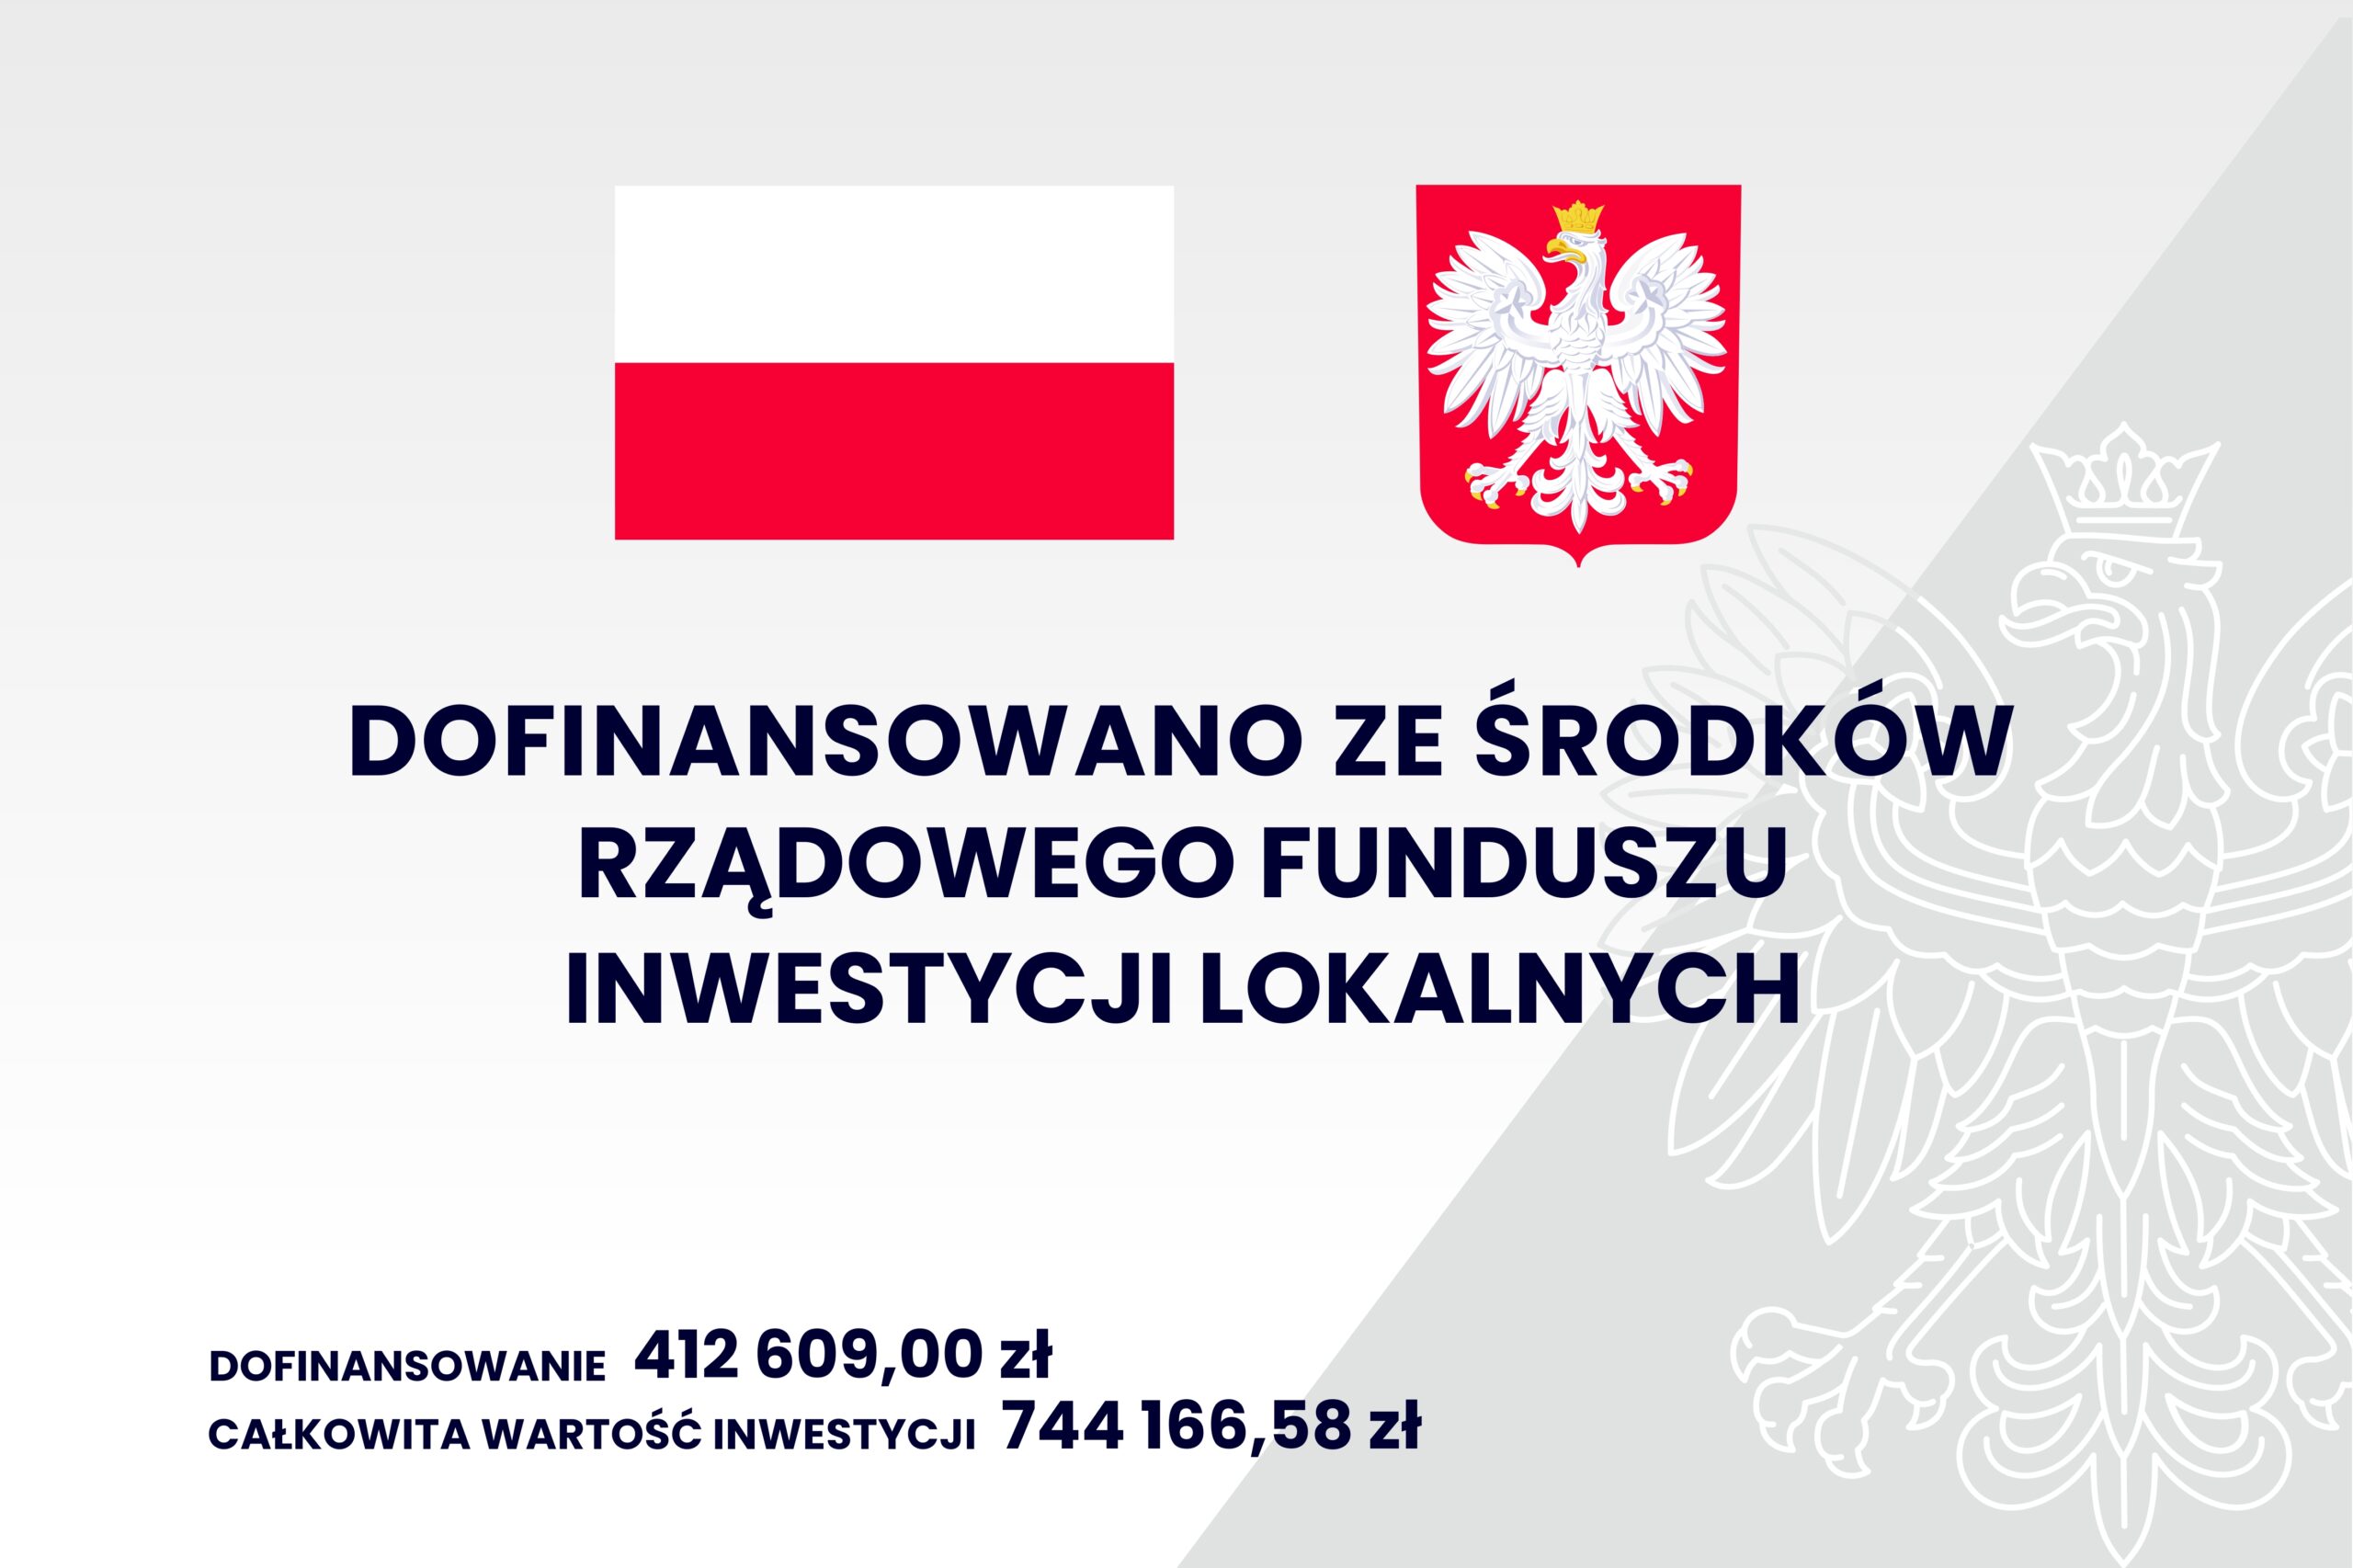 Grafika przedstawia informacje: dofinansowano ze środków rządowego funduszu inwestycji lokalnych; dofinansowanie - 412 609,00 zł; całkowita wartość inwestycji - 744 166,58 zł; na górze jest flaga i godło Polski